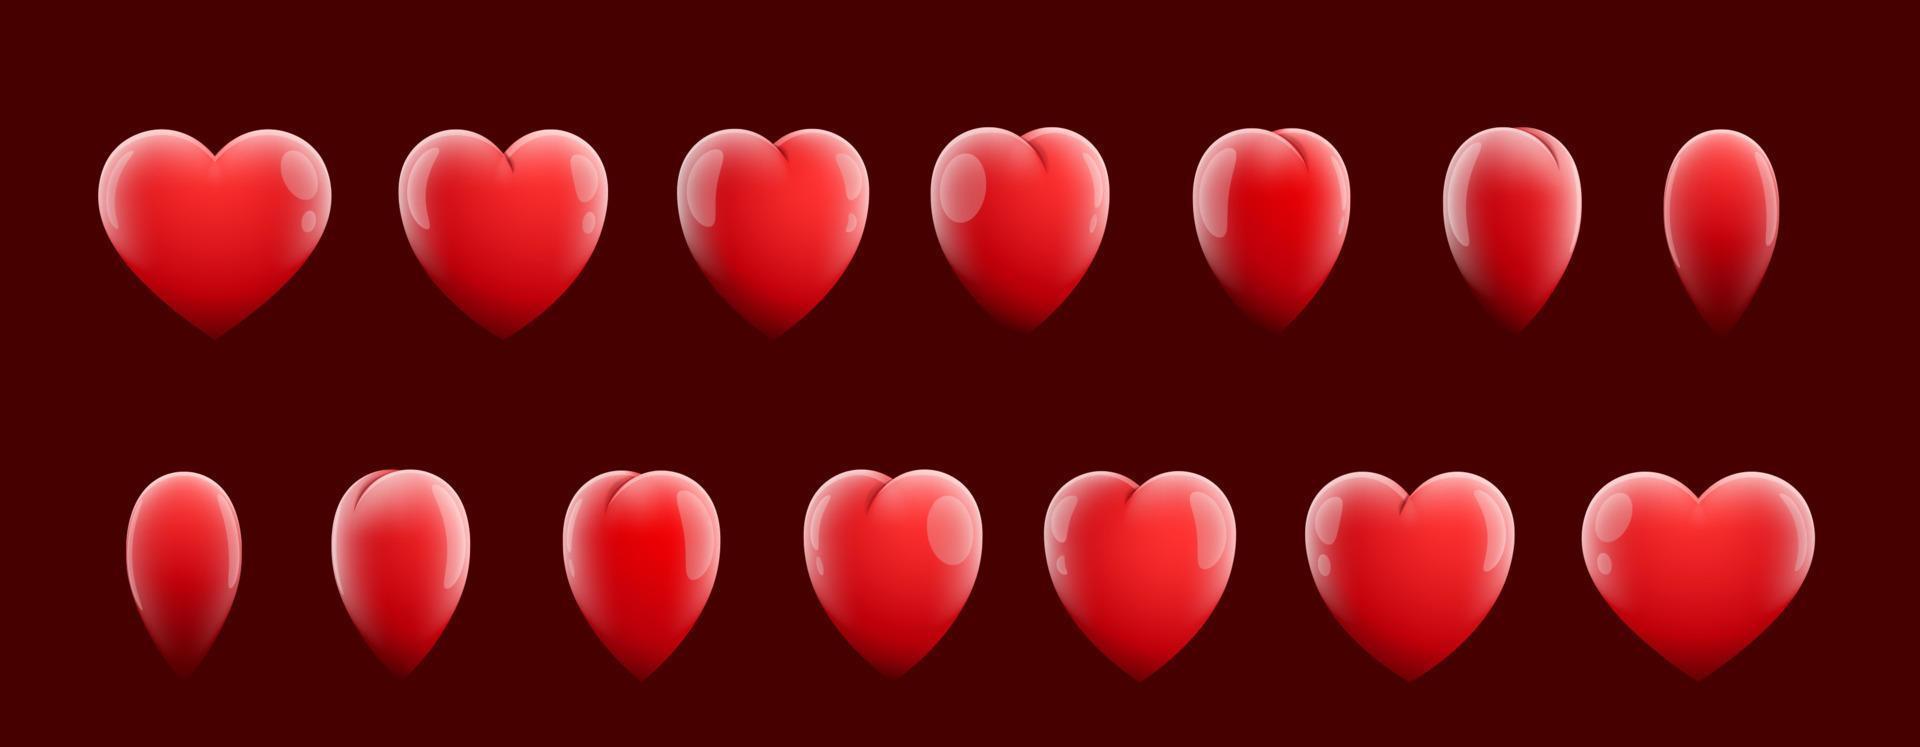 folha de sprite de jogo de sequência de coração vermelho animado vetor